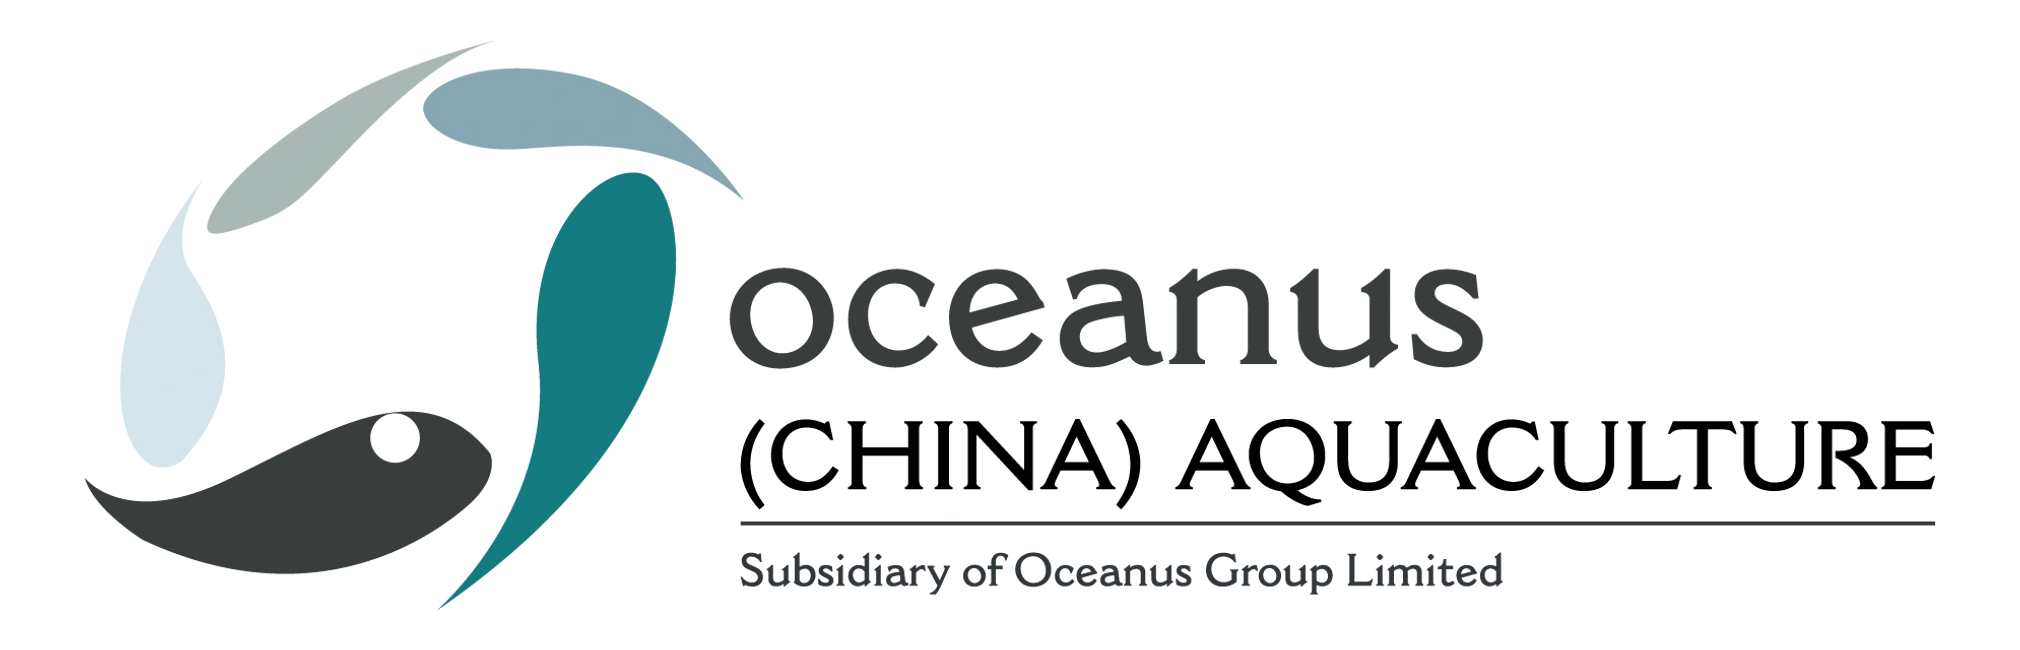 Oceanus Aquaculture Company Logo